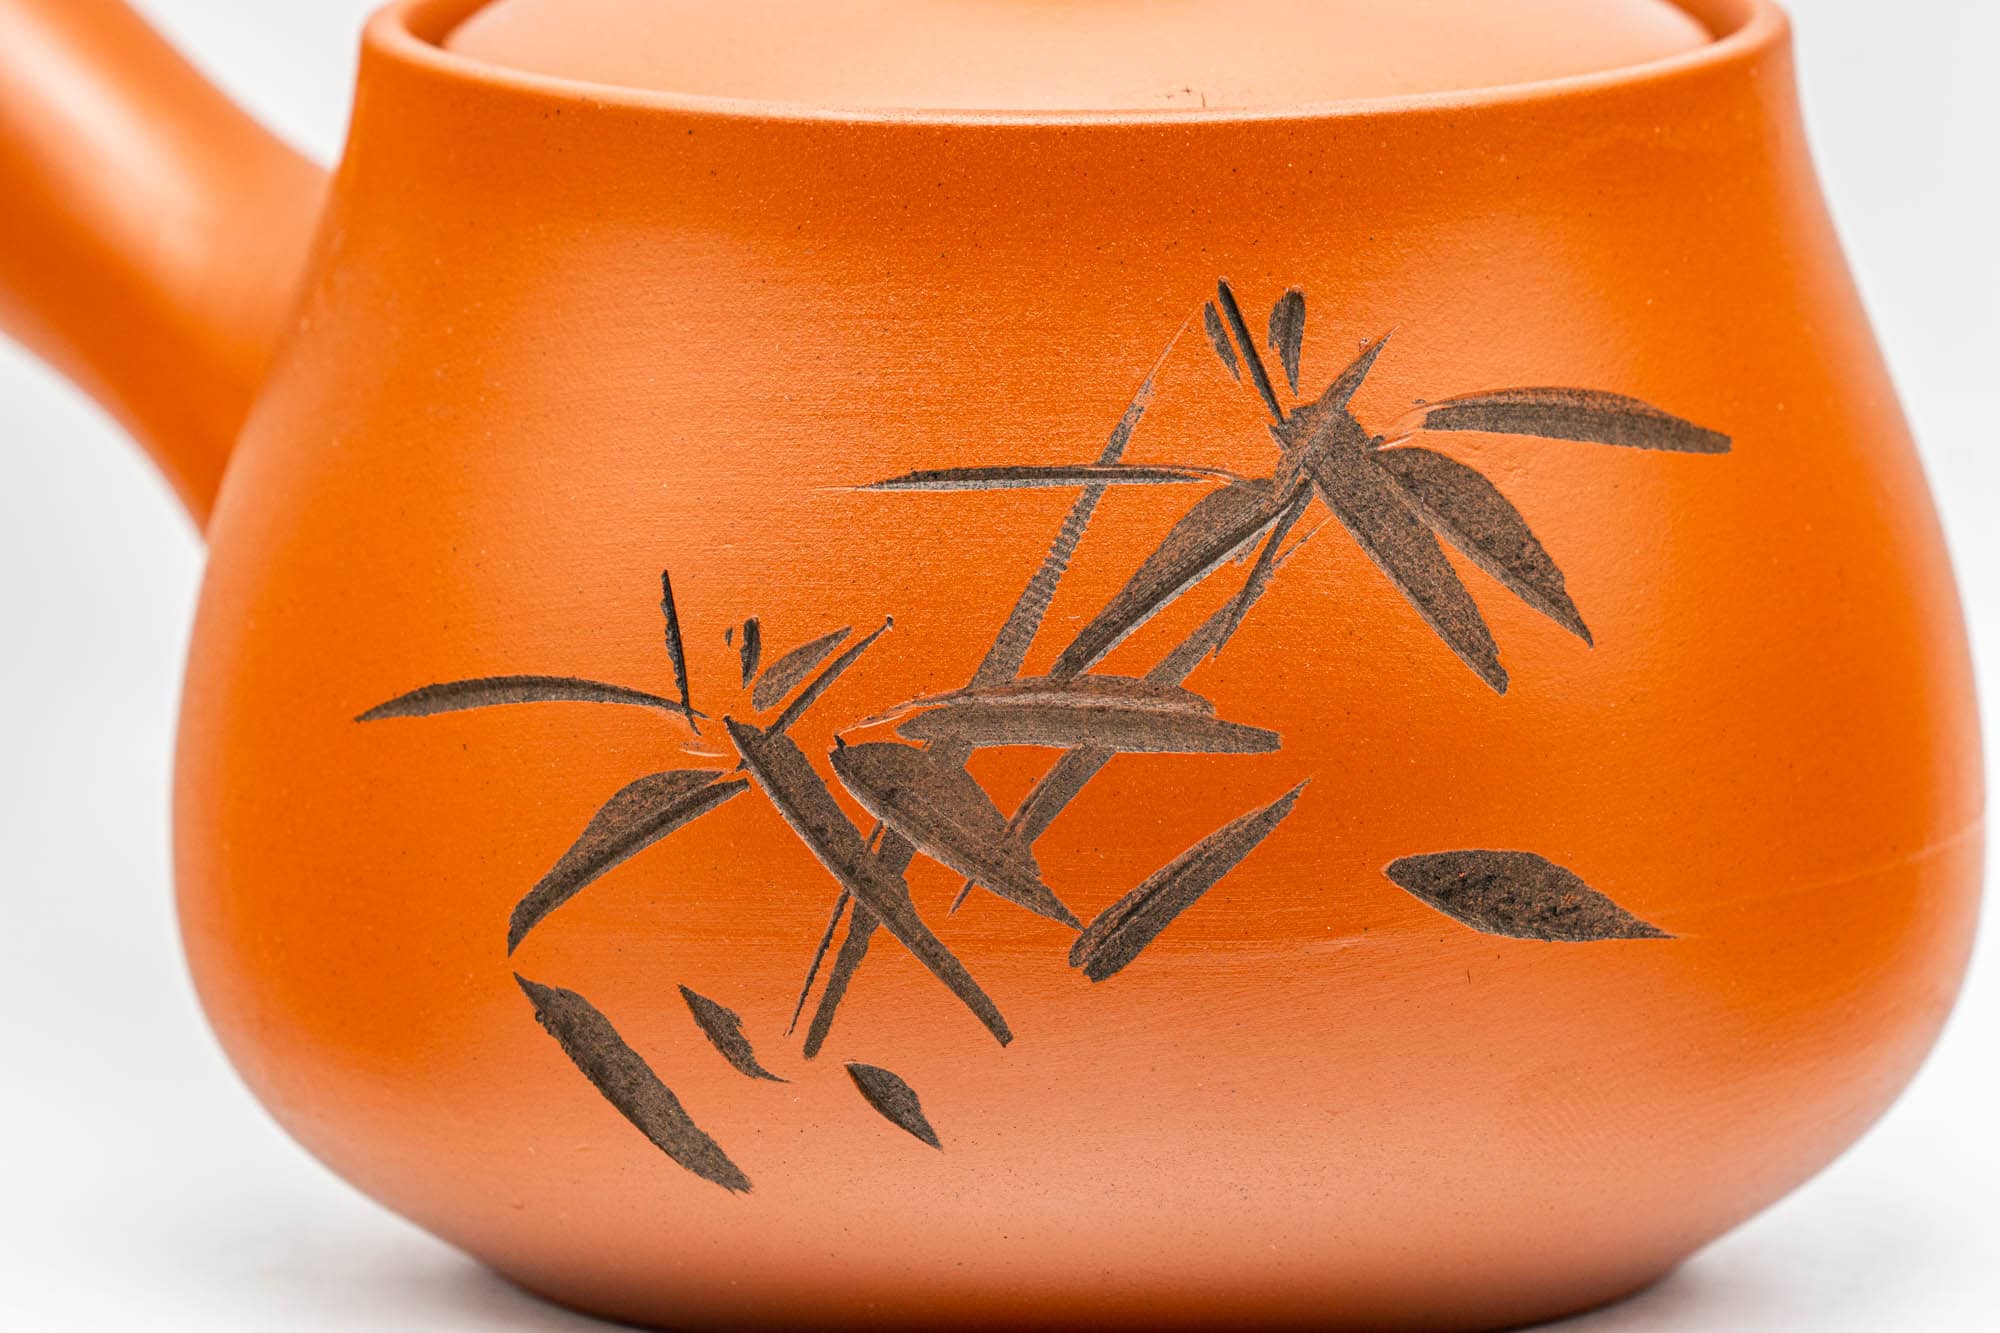 Japanese Kyusu - Bamboo Engraved Red Shudei Tokoname-yaki Ceramic Filter Teapot - 315ml